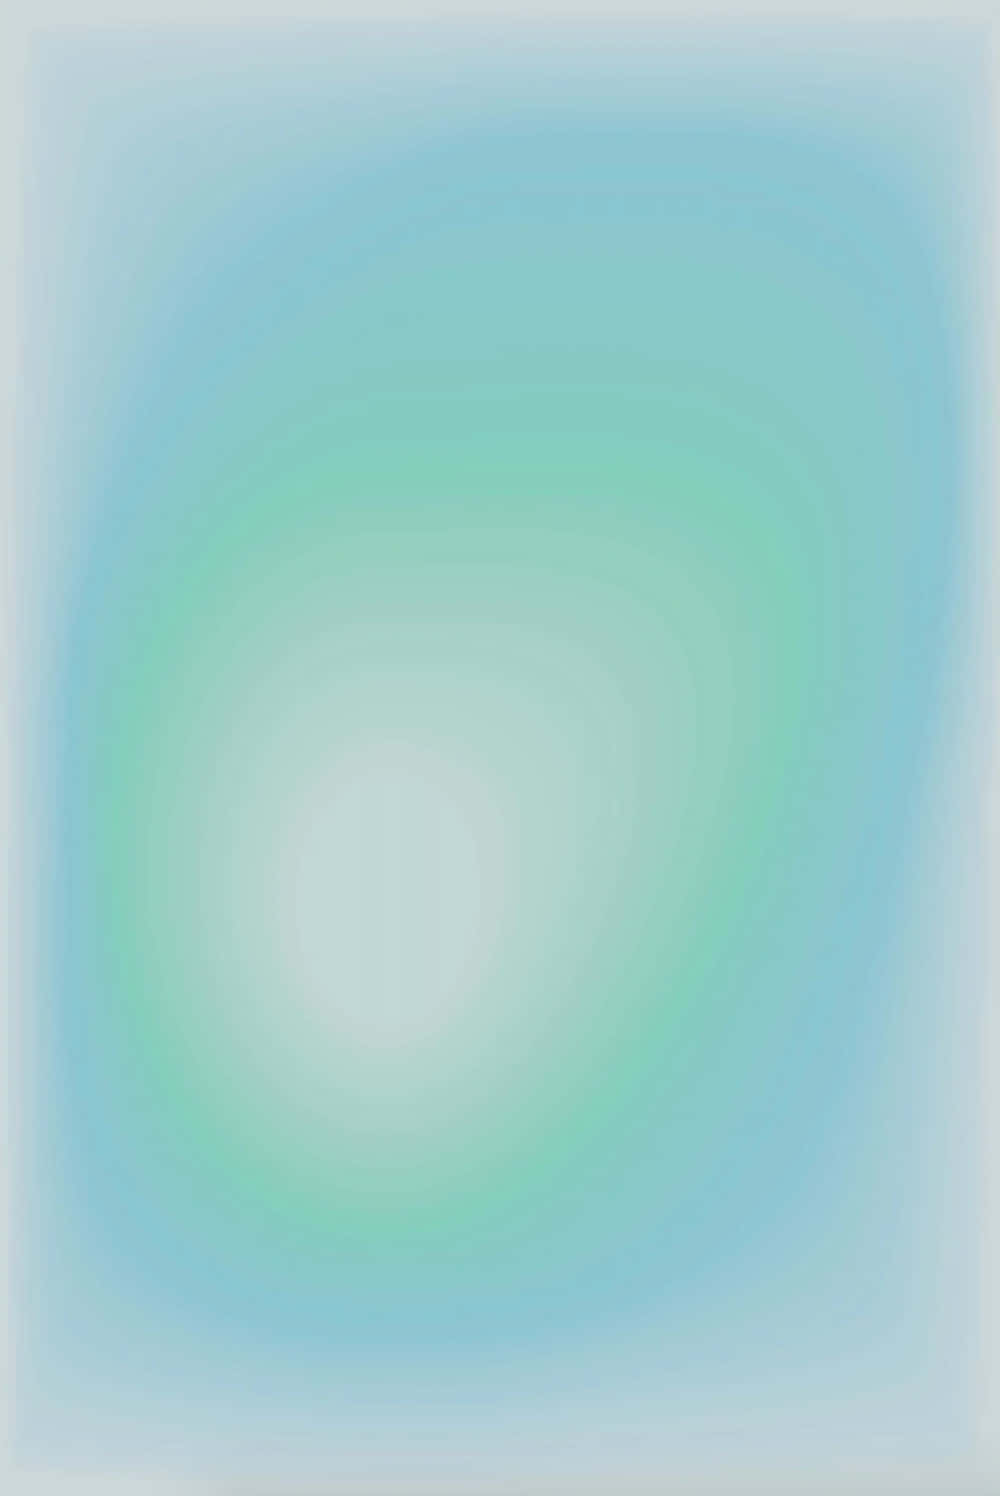 Unapittura Astratta Di Colore Blu E Verde Su Uno Sfondo Bianco Sfondo